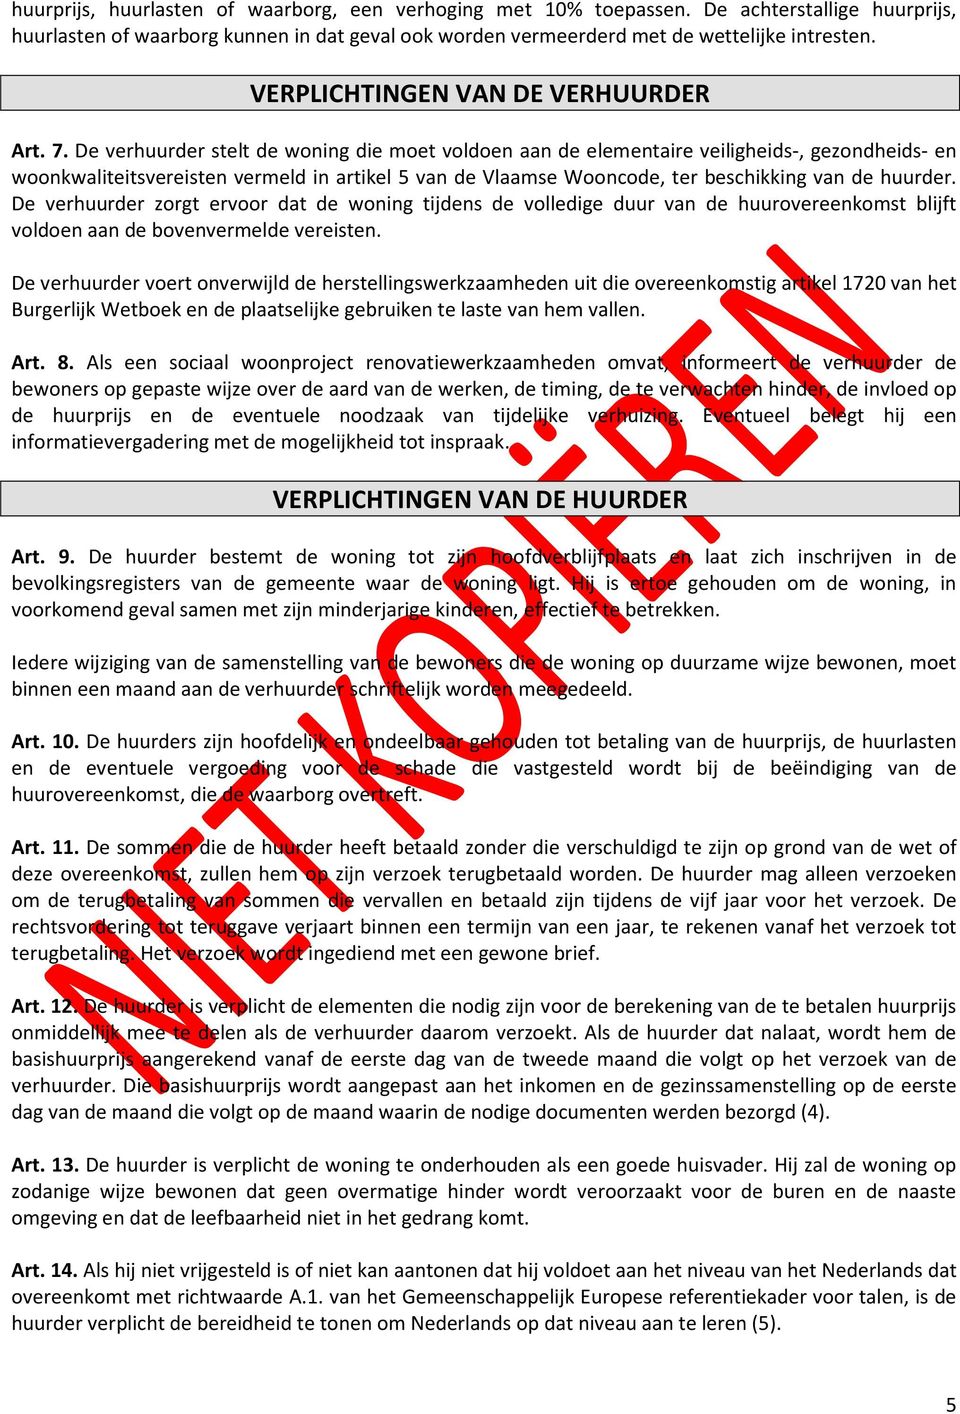 De verhuurder stelt de woning die moet voldoen aan de elementaire veiligheids-, gezondheids- en woonkwaliteitsvereisten vermeld in artikel 5 van de Vlaamse Wooncode, ter beschikking van de huurder.